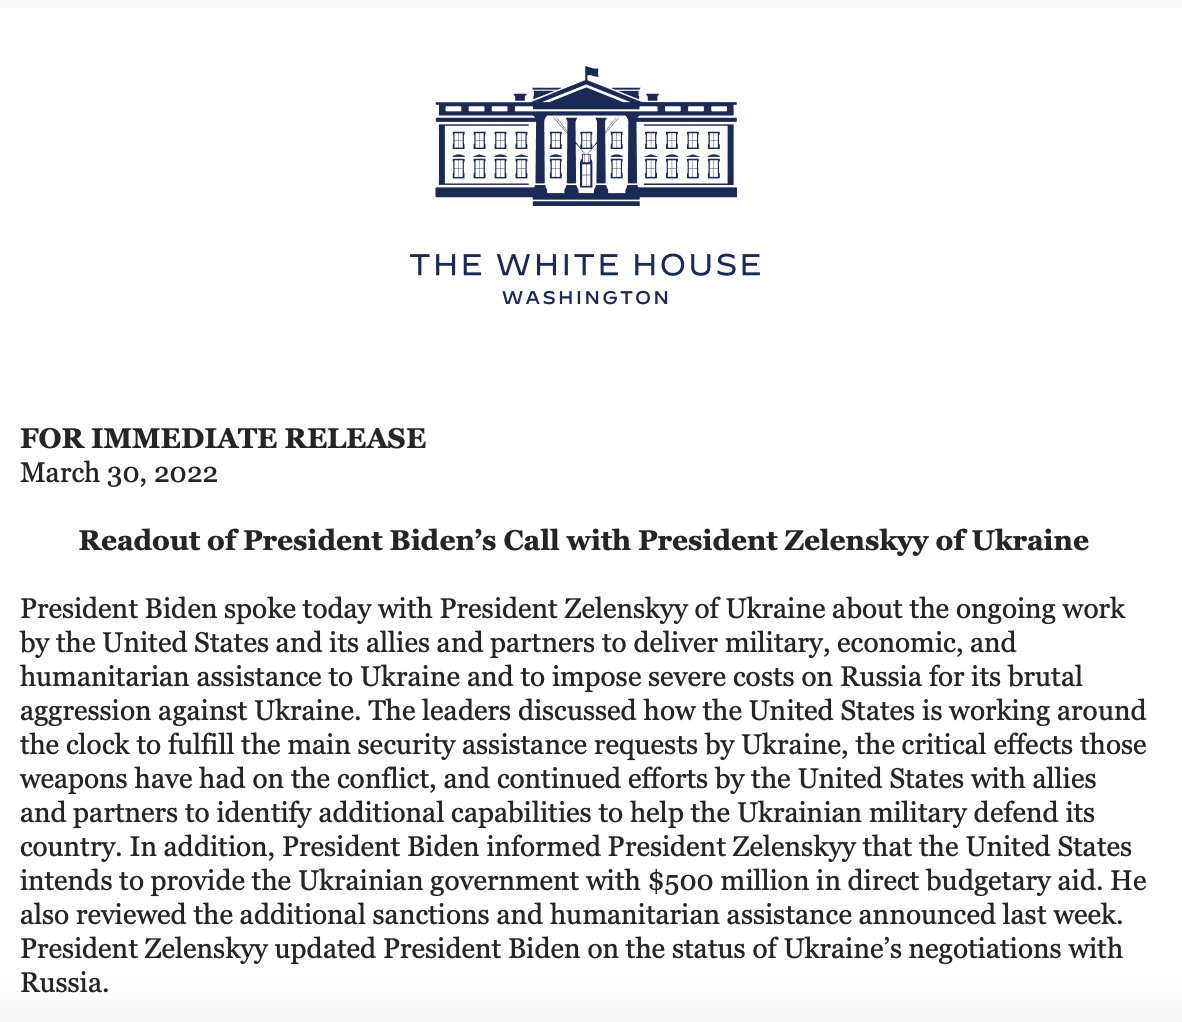 Biden powiedział Zełenskiemu, że Stany Zjednoczone zamierzają udzielić Ukrainie dodatkowej pomocy w wysokości 500 mln USD